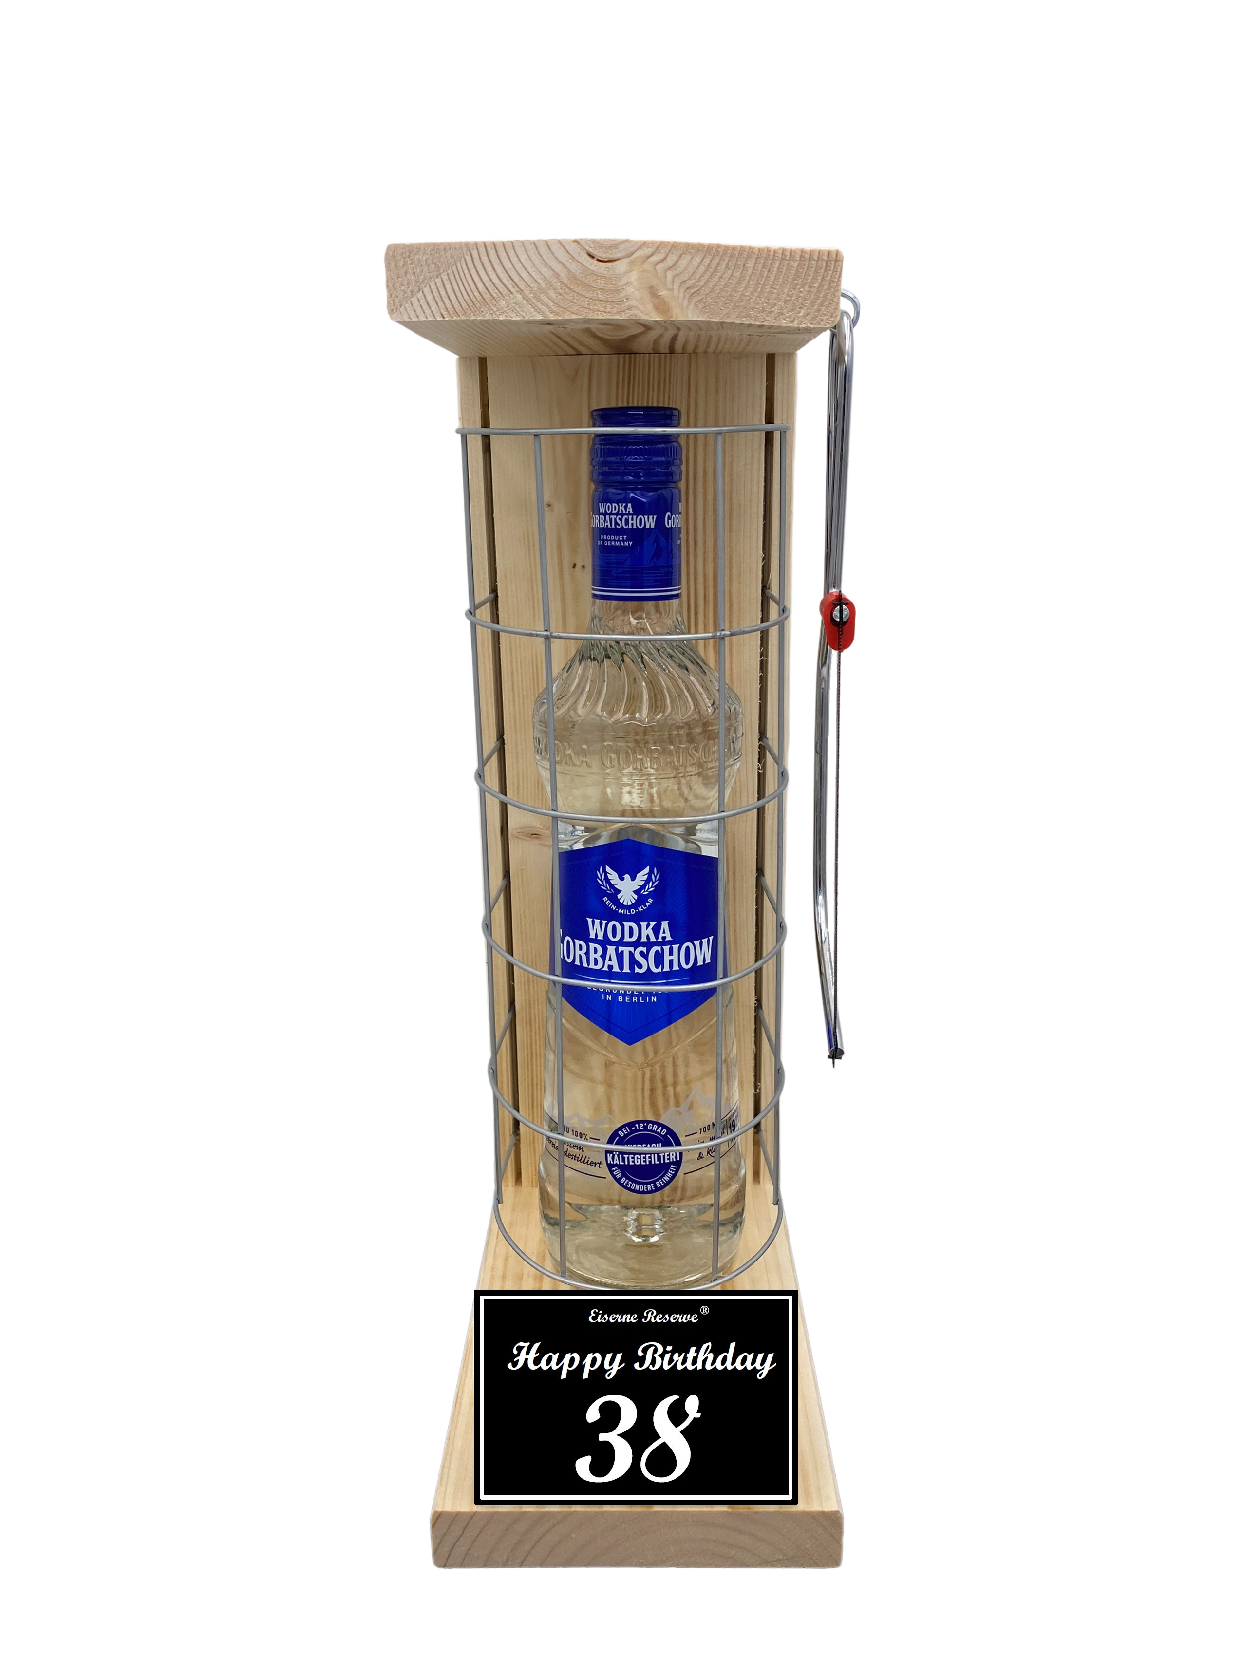 Wodka Geschenk zum 38 Geburtstag - Eiserne Reserve Gitterkäfig